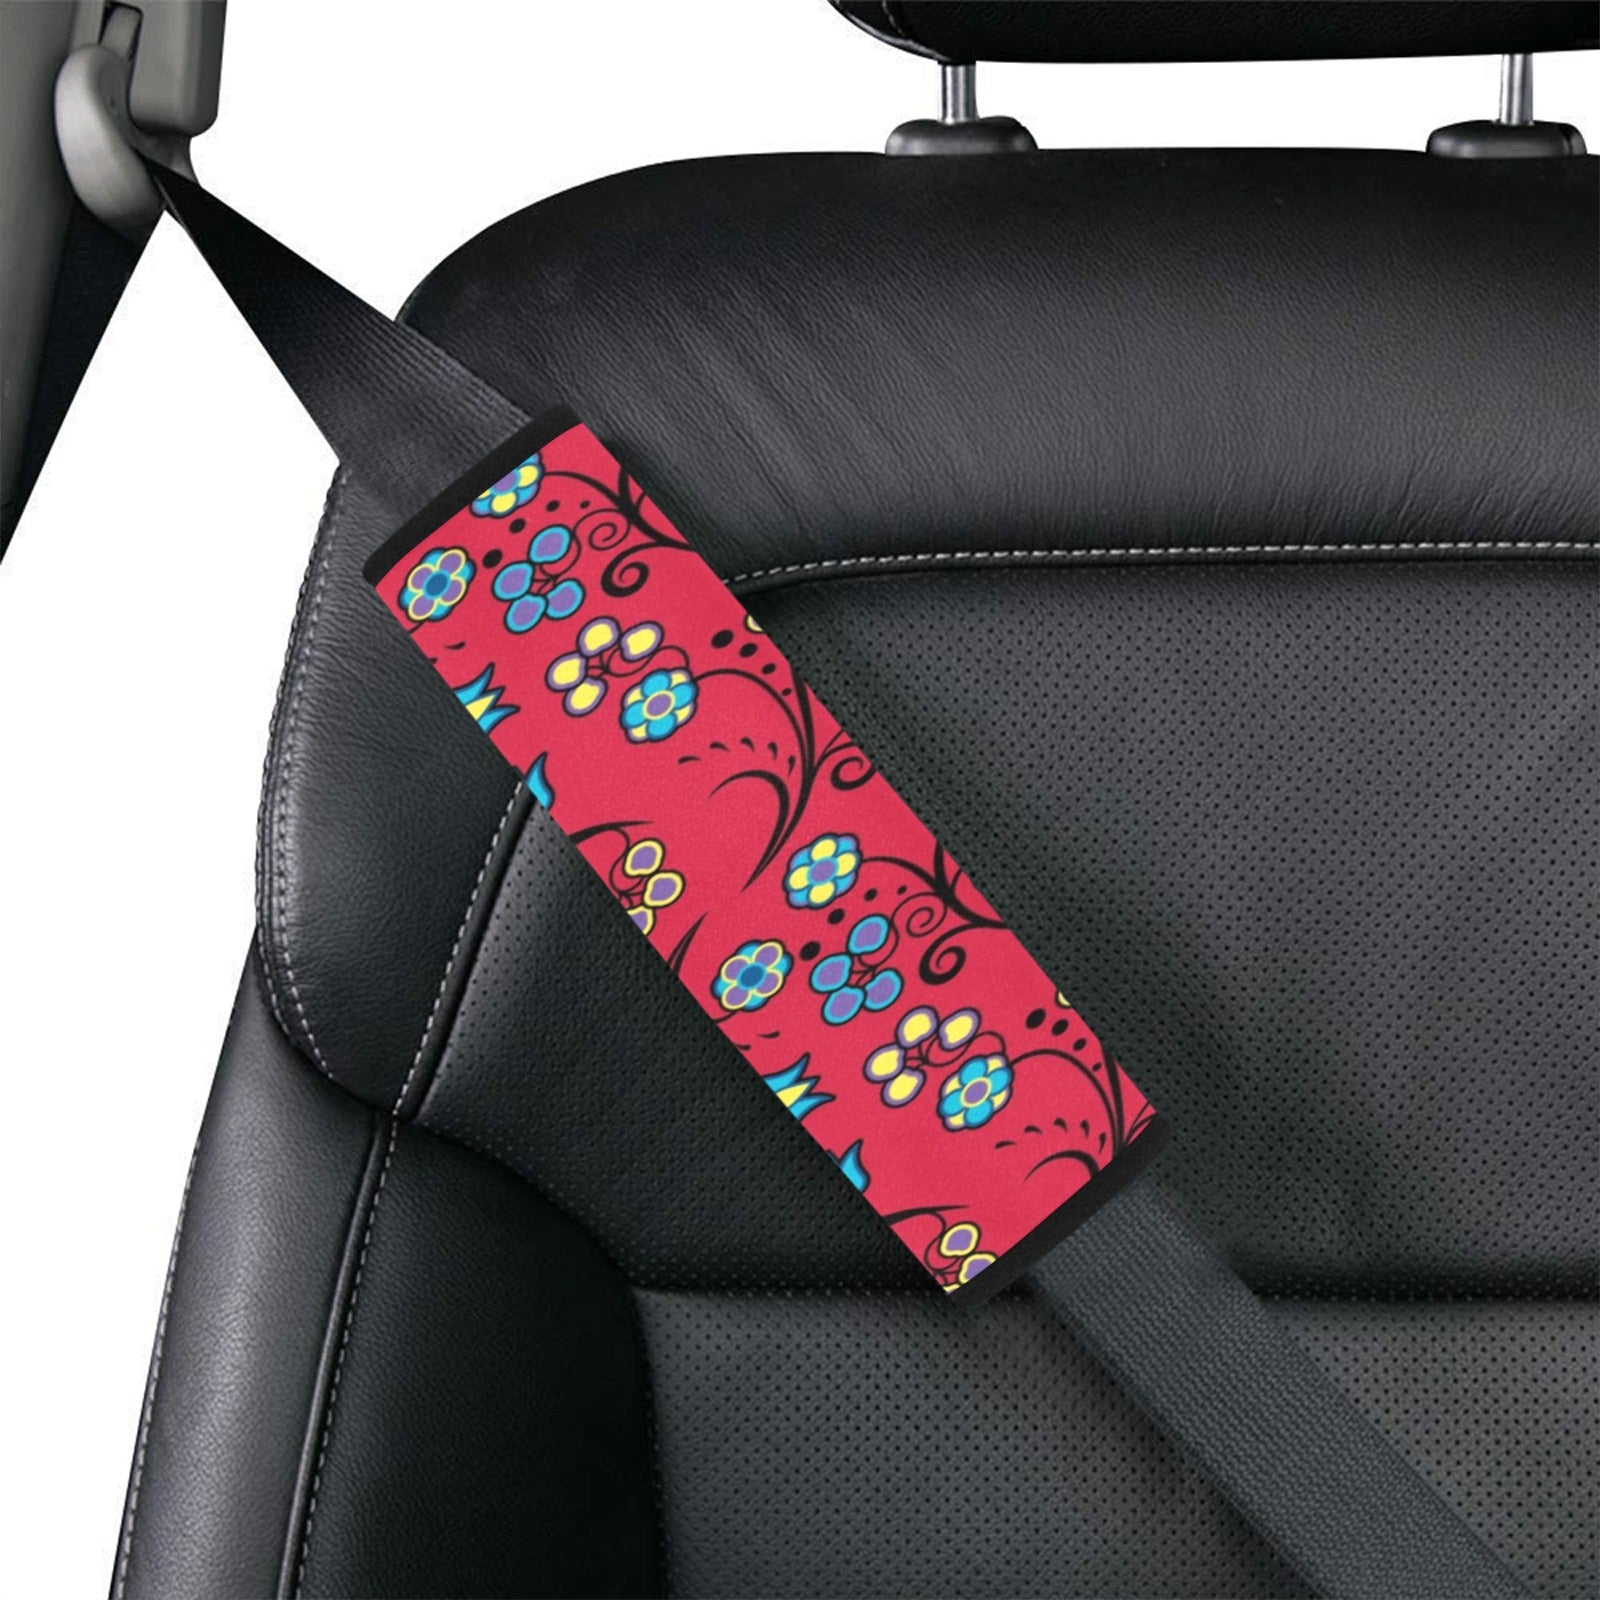 Blue Trio Cardinal Car Seat Belt Cover 7''x12.6'' (Pack of 2) Car Seat Belt Cover 7x12.6 (Pack of 2) e-joyer 